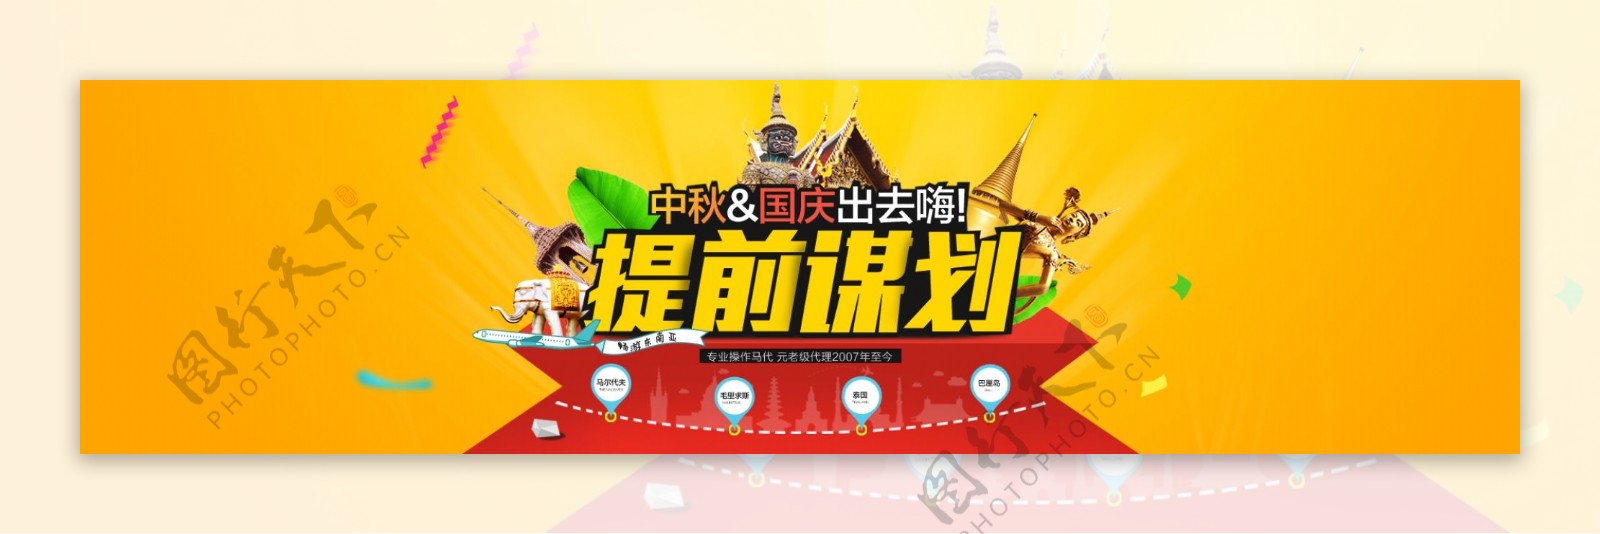 国庆节中秋节旅游促销海报